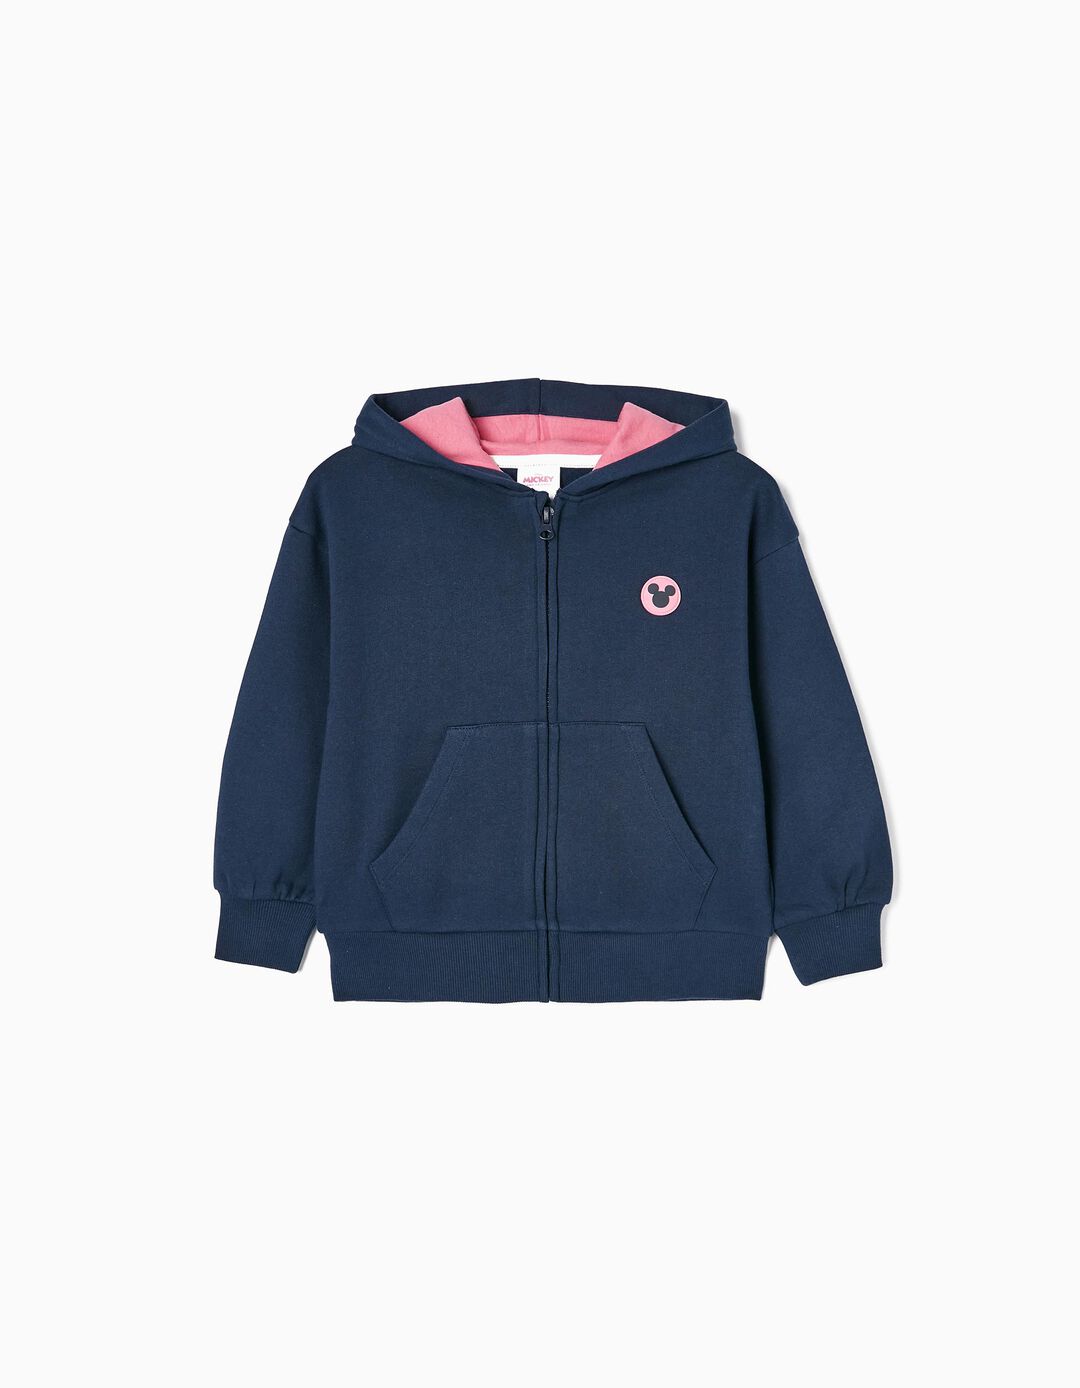 Brushed Cotton Jacket for Girls 'Minnie', Dark Blue/Pink